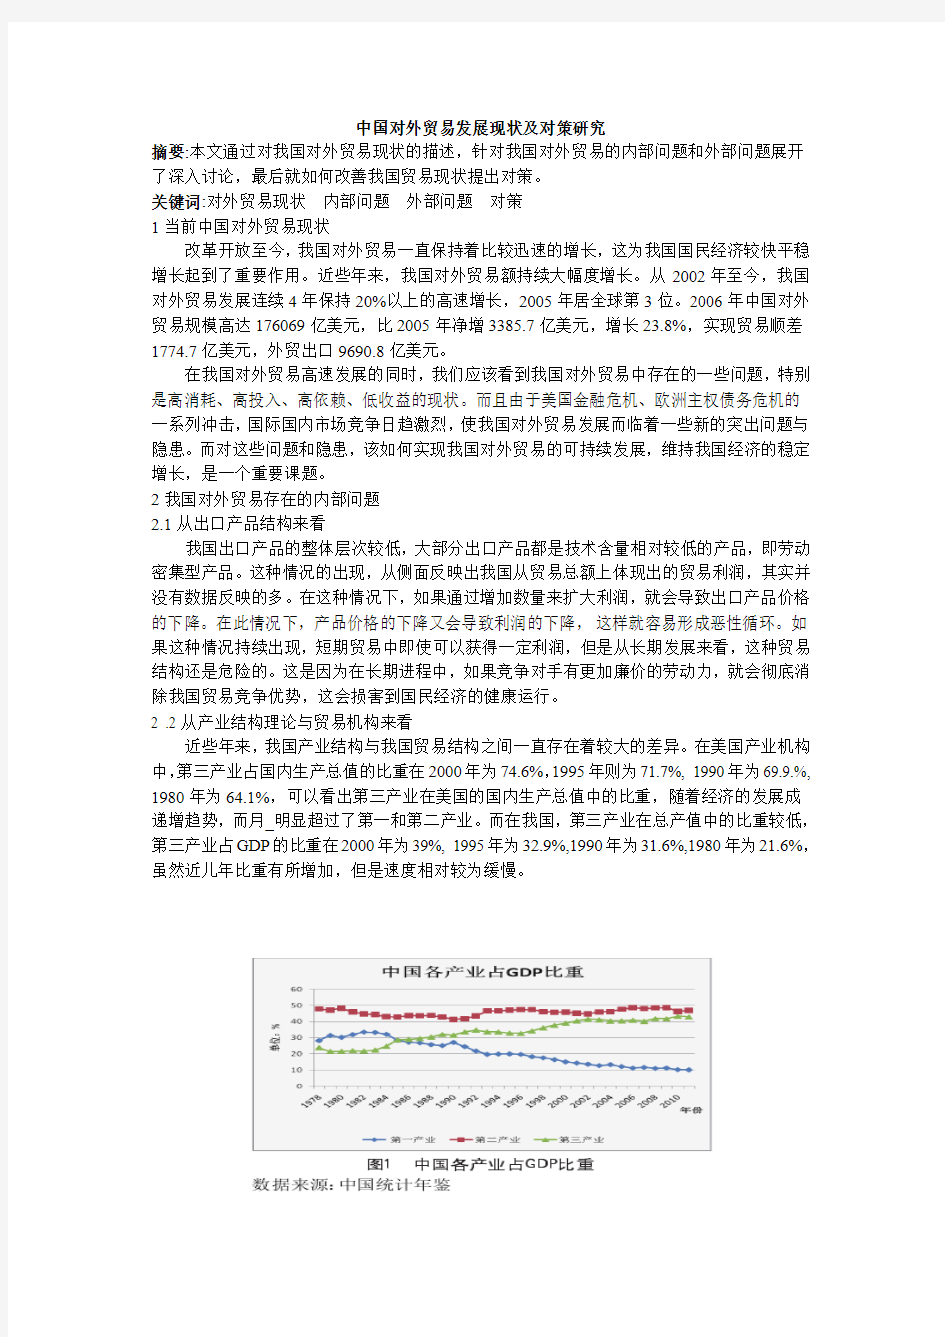 中国对外贸易发展现状及对策研究1